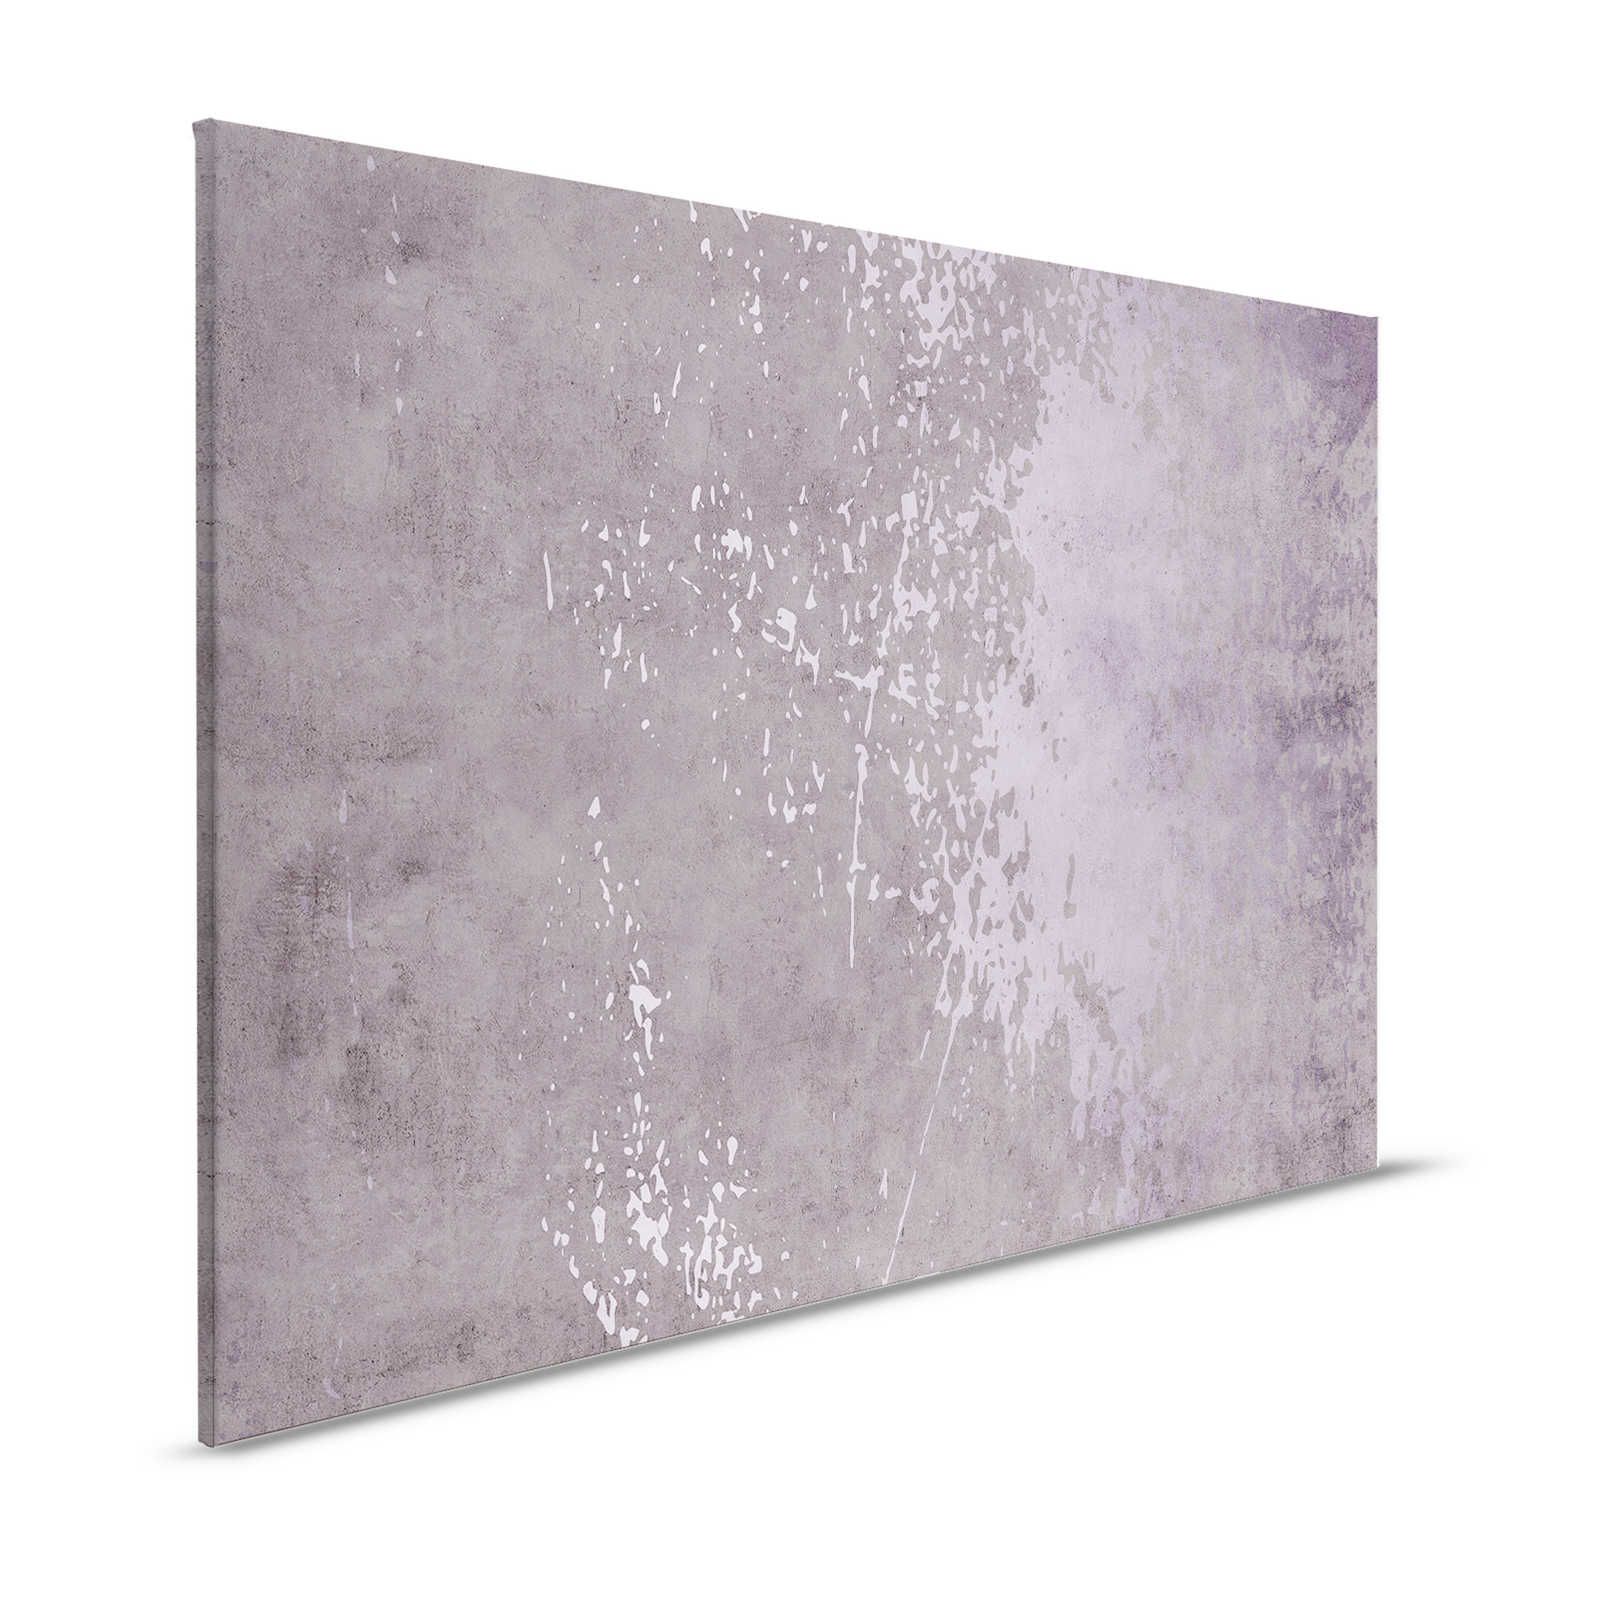 Vintage Wall 2 - Quadro su tela in gesso lilla dall'aspetto usato - 1,20 m x 0,80 m
